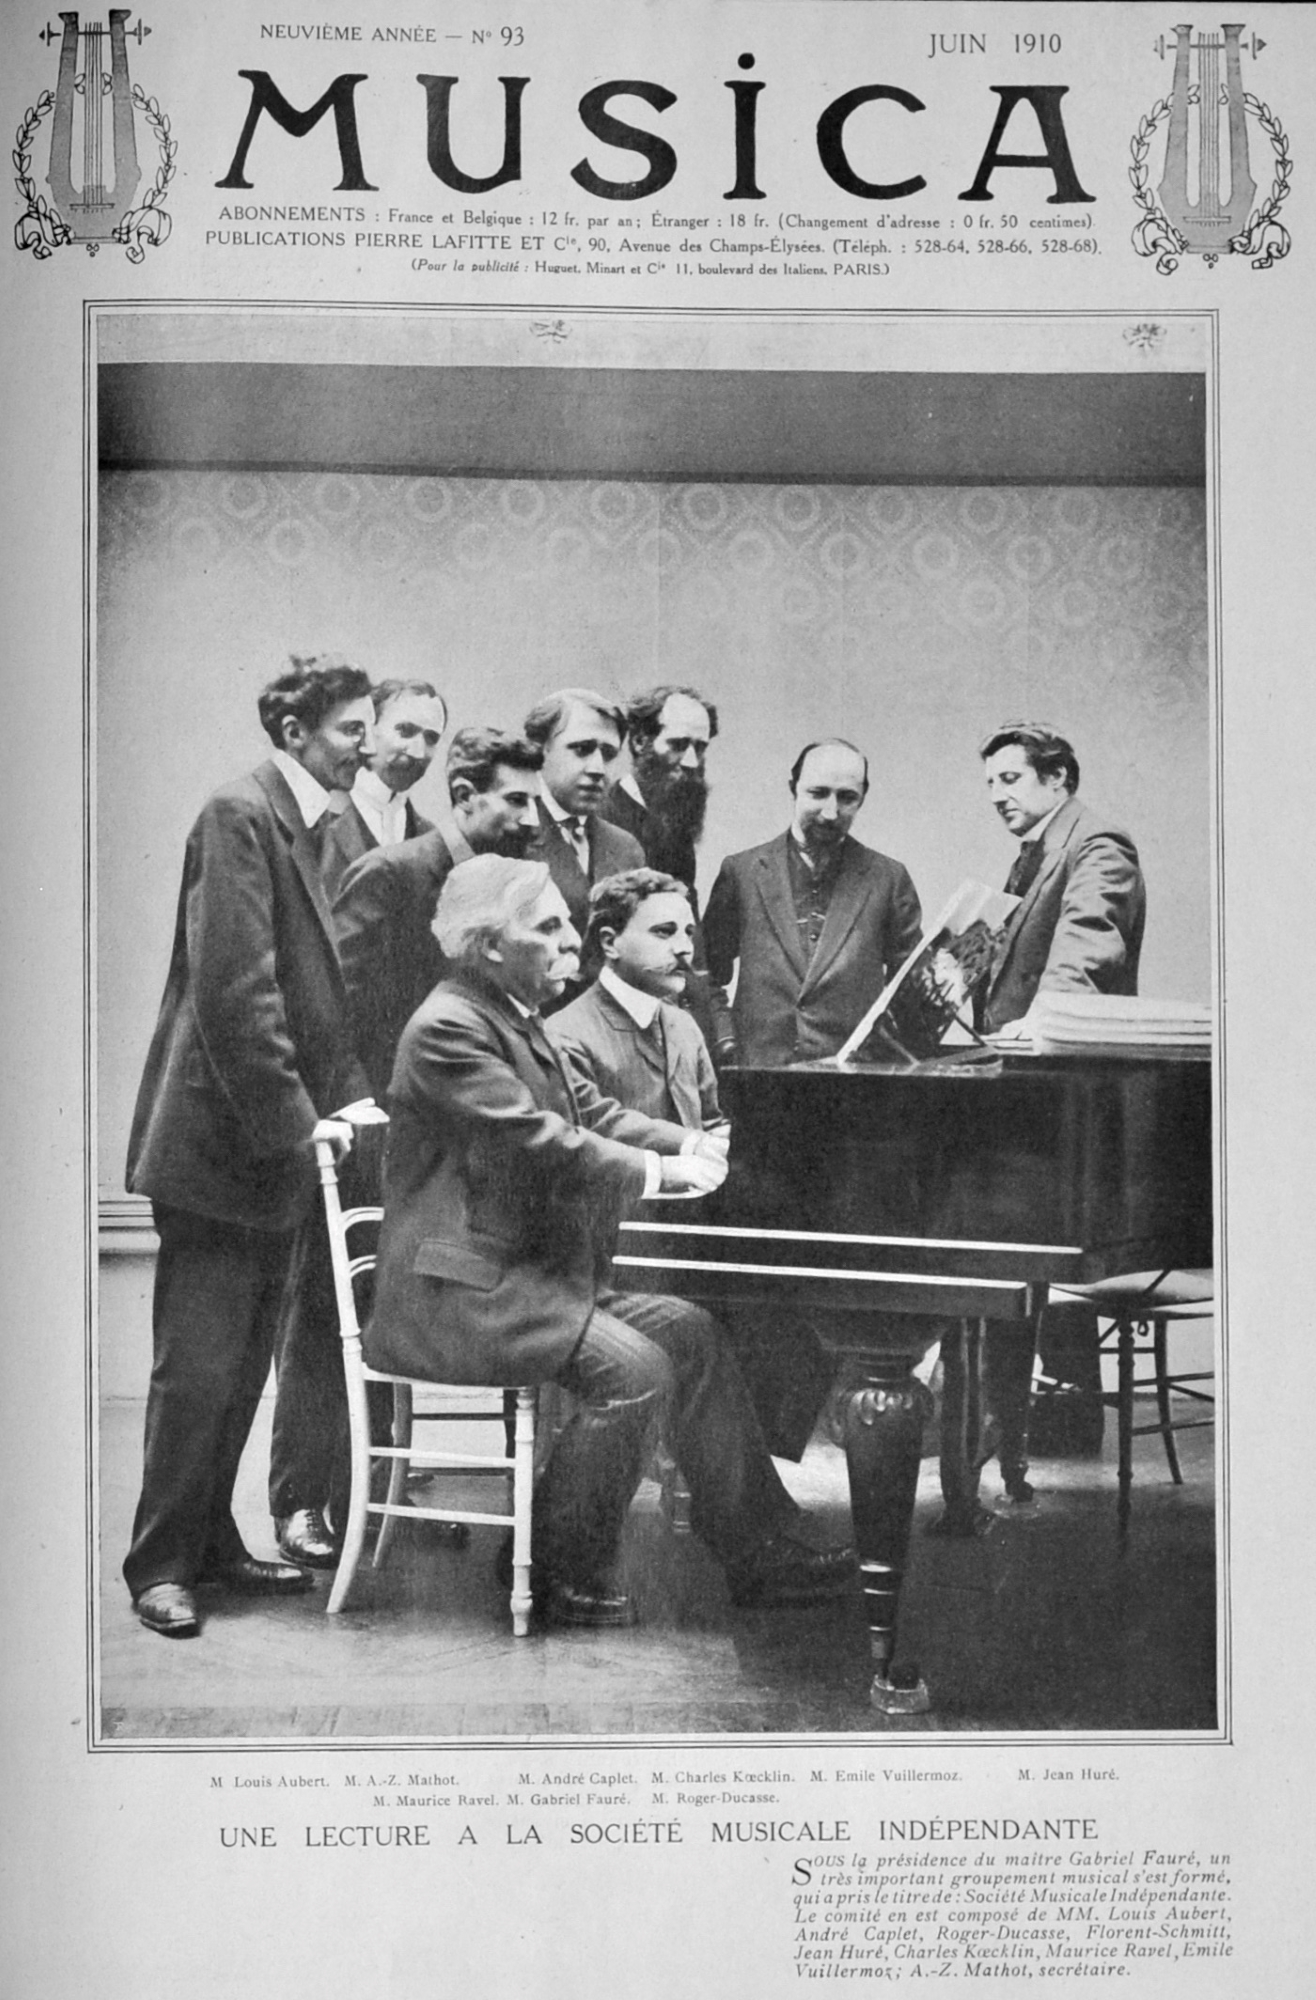 Lettura a prima vista alla Société musicale indépendante (fotografia pubblicata in “Musica”, giugno 1910)